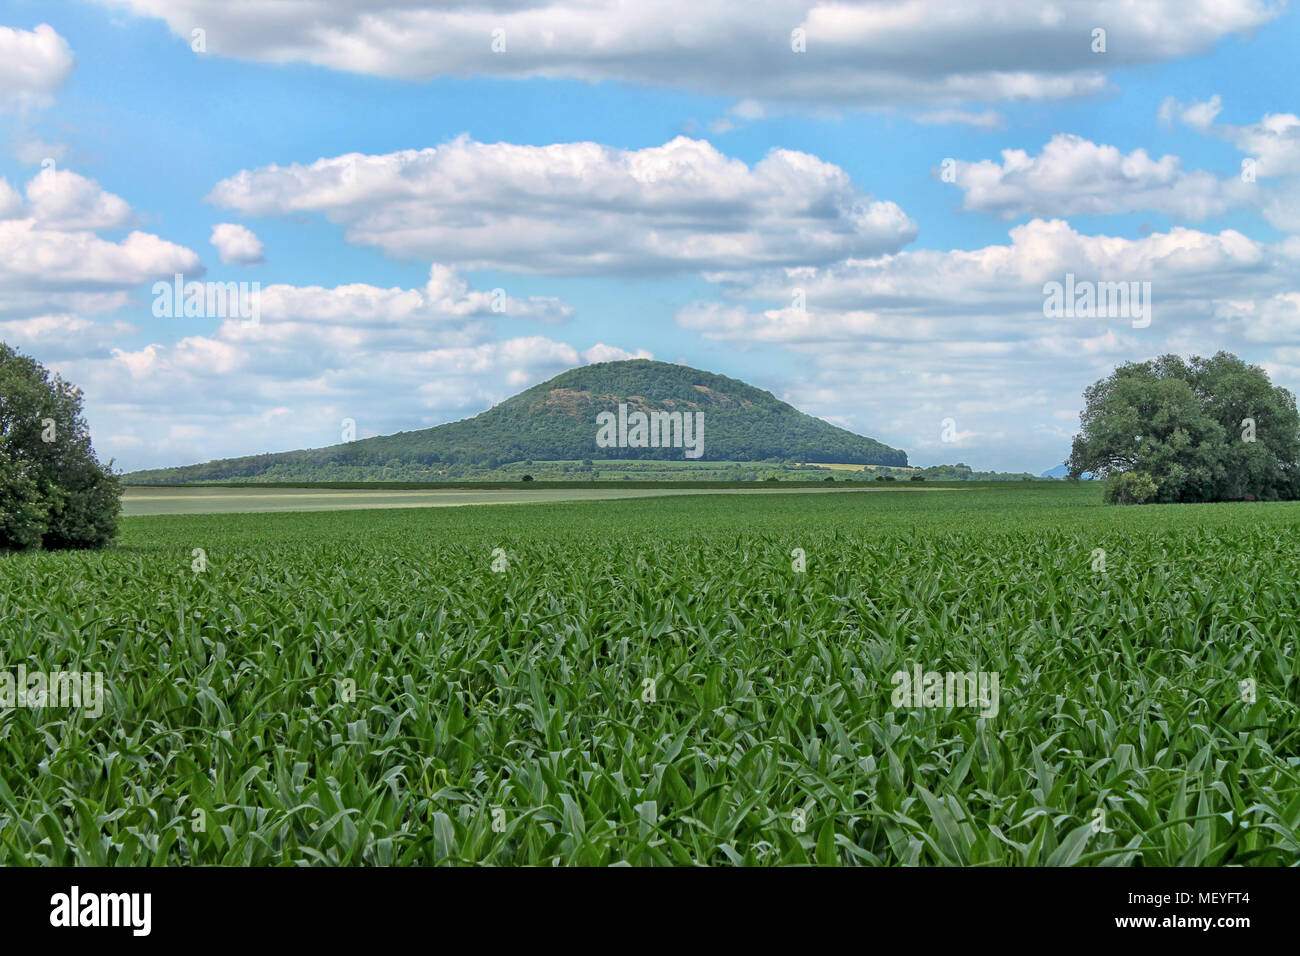 La montagne de Rip - lieu de pèlerinage populaire, la région de Bohême centrale. République tchèque. Banque D'Images